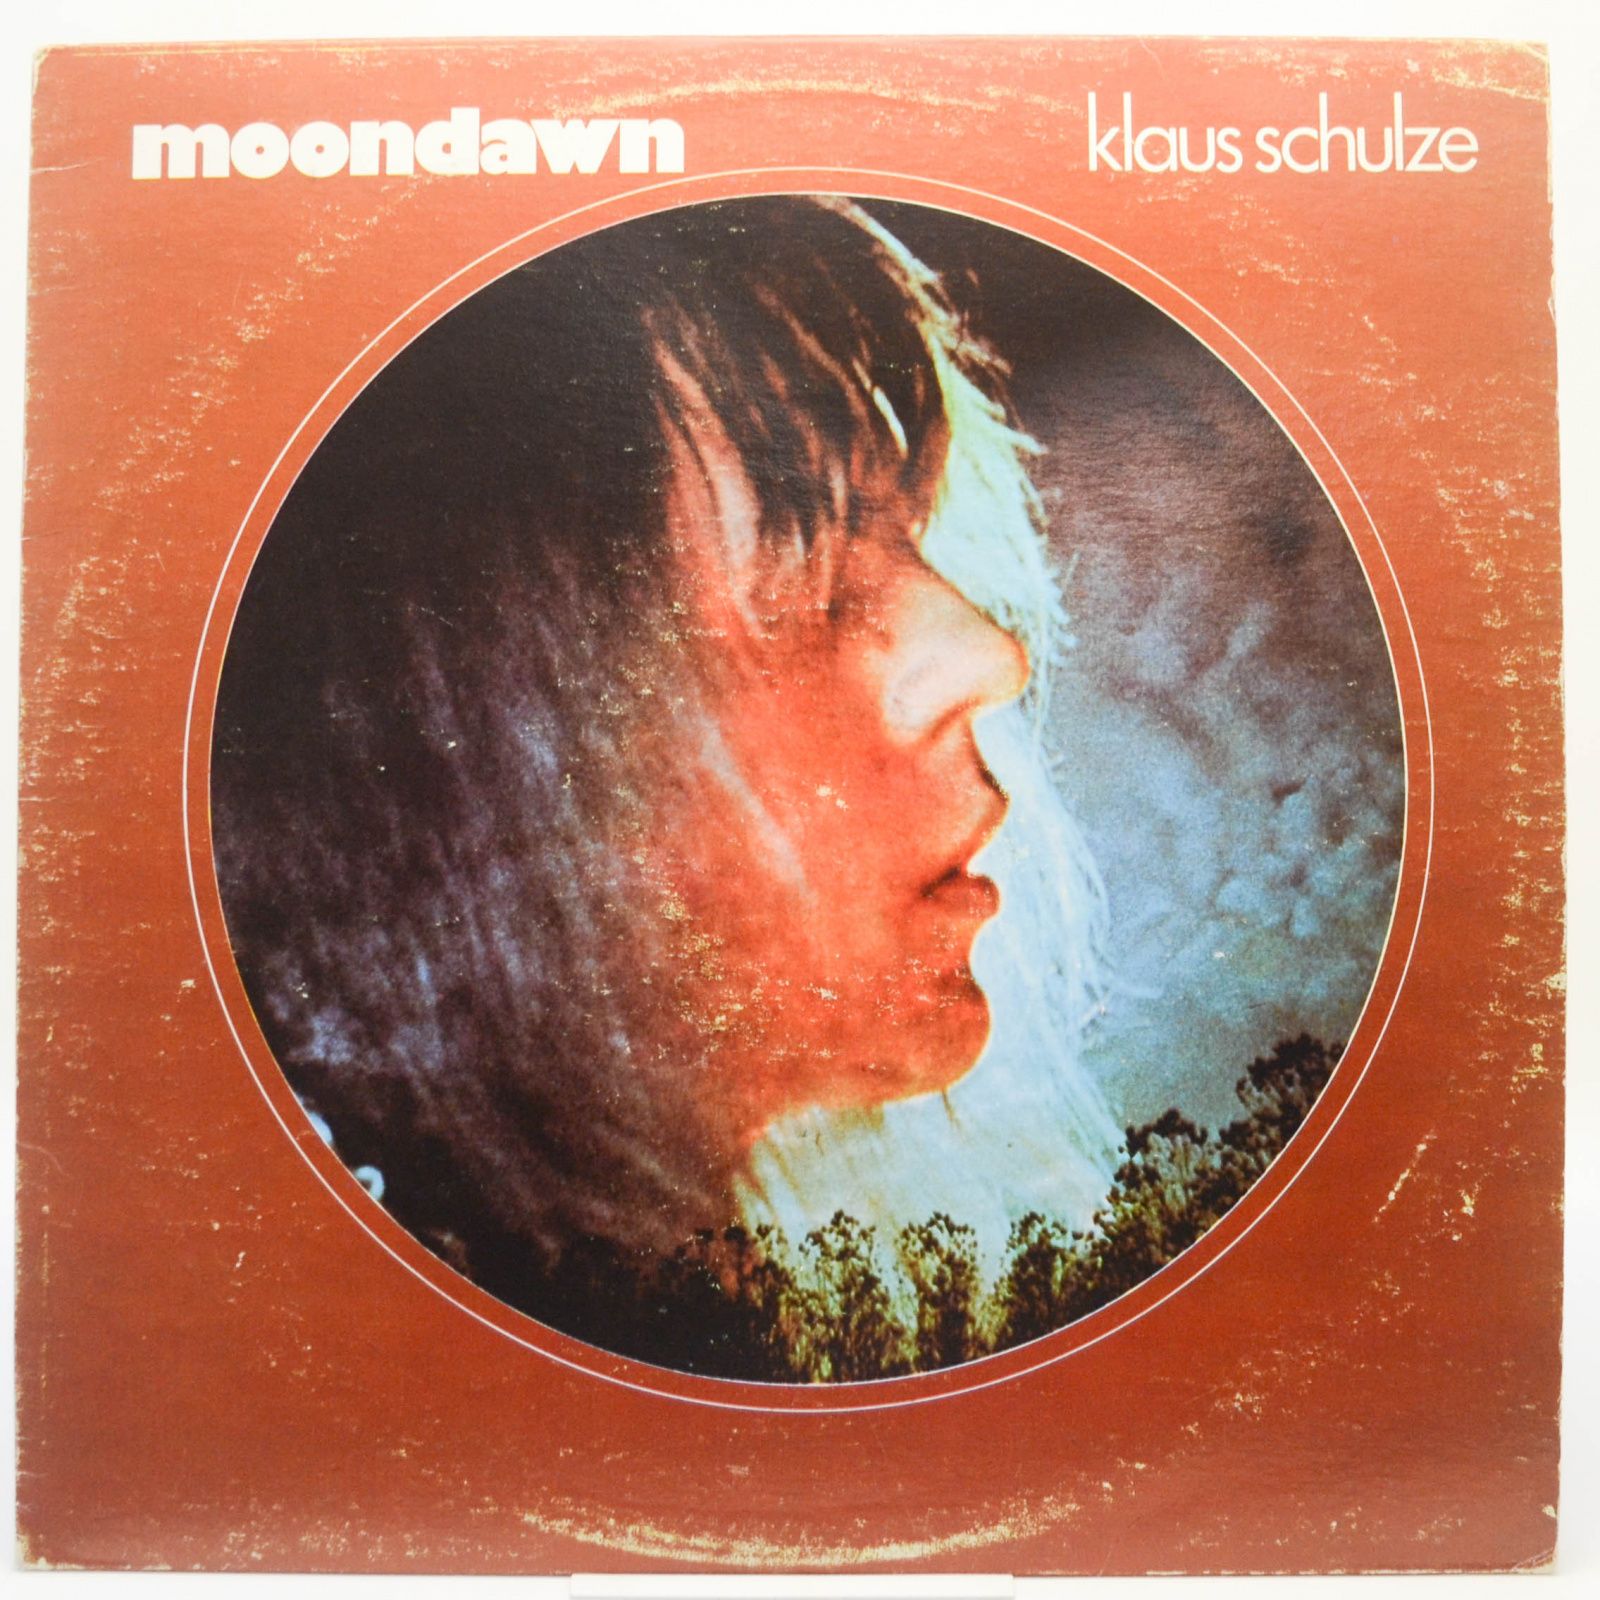 Klaus Schulze — Moondawn, 1979